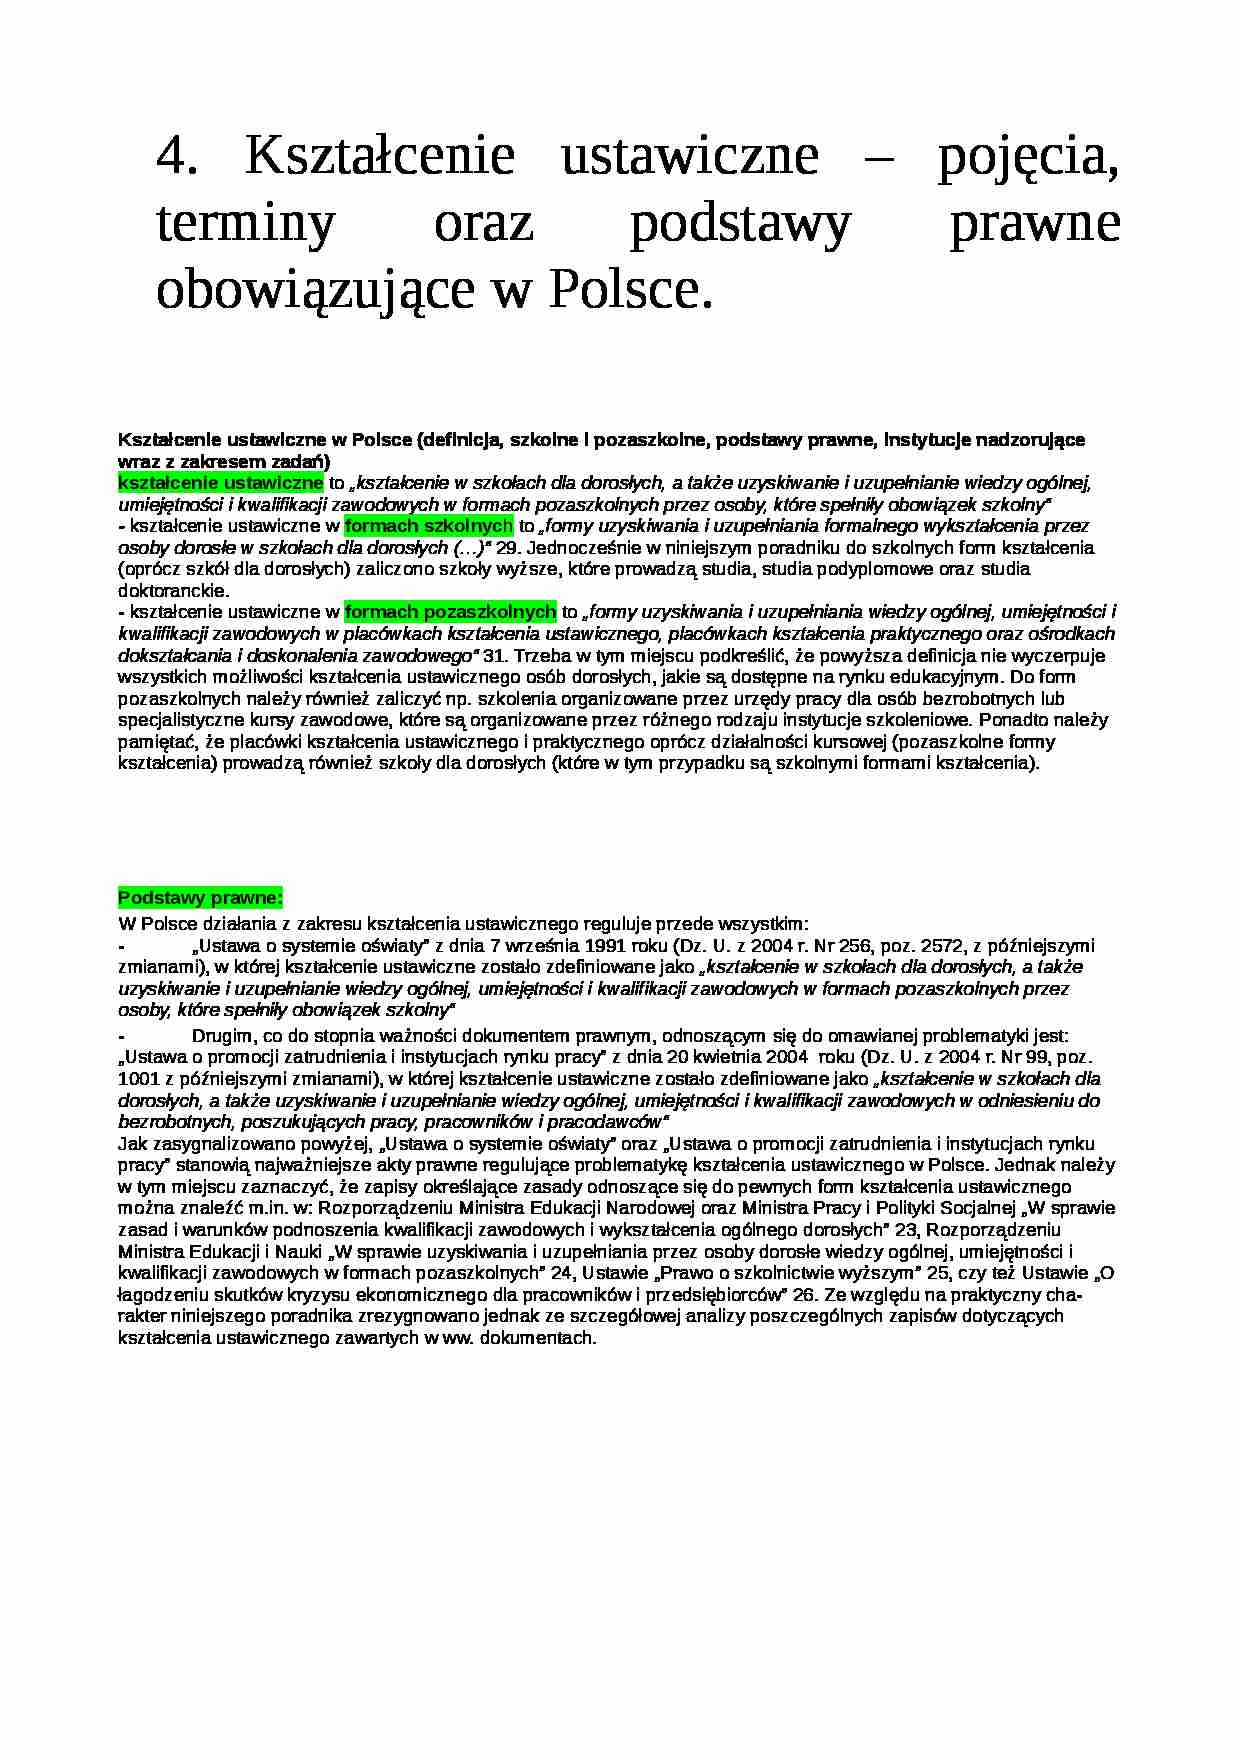  Kształcenie ustawiczne - pojęcia, terminy oraz podstawy prawne obowiązujące w Polsce - strona 1